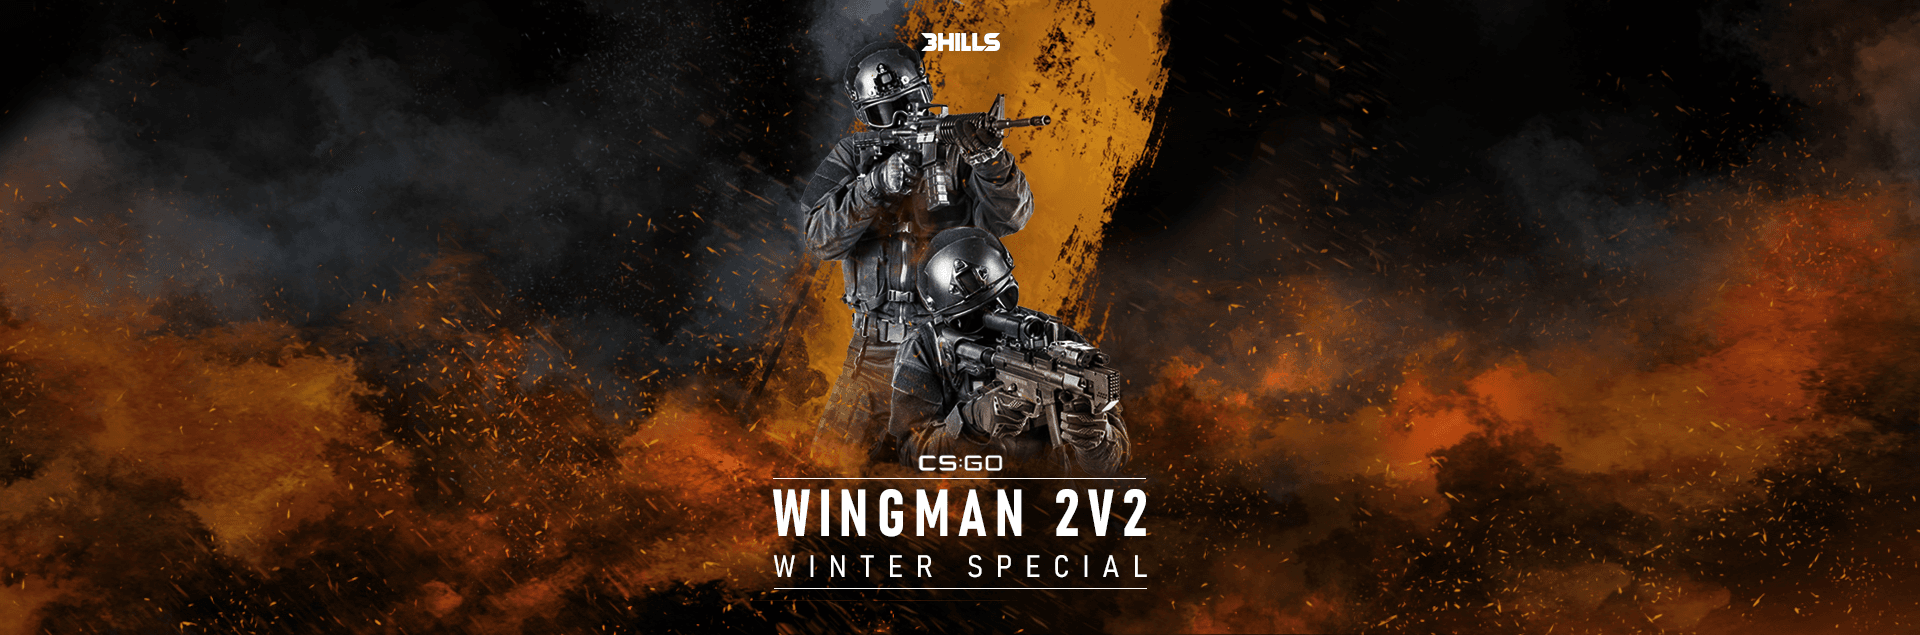 Wingman 2v2 - Winter Special